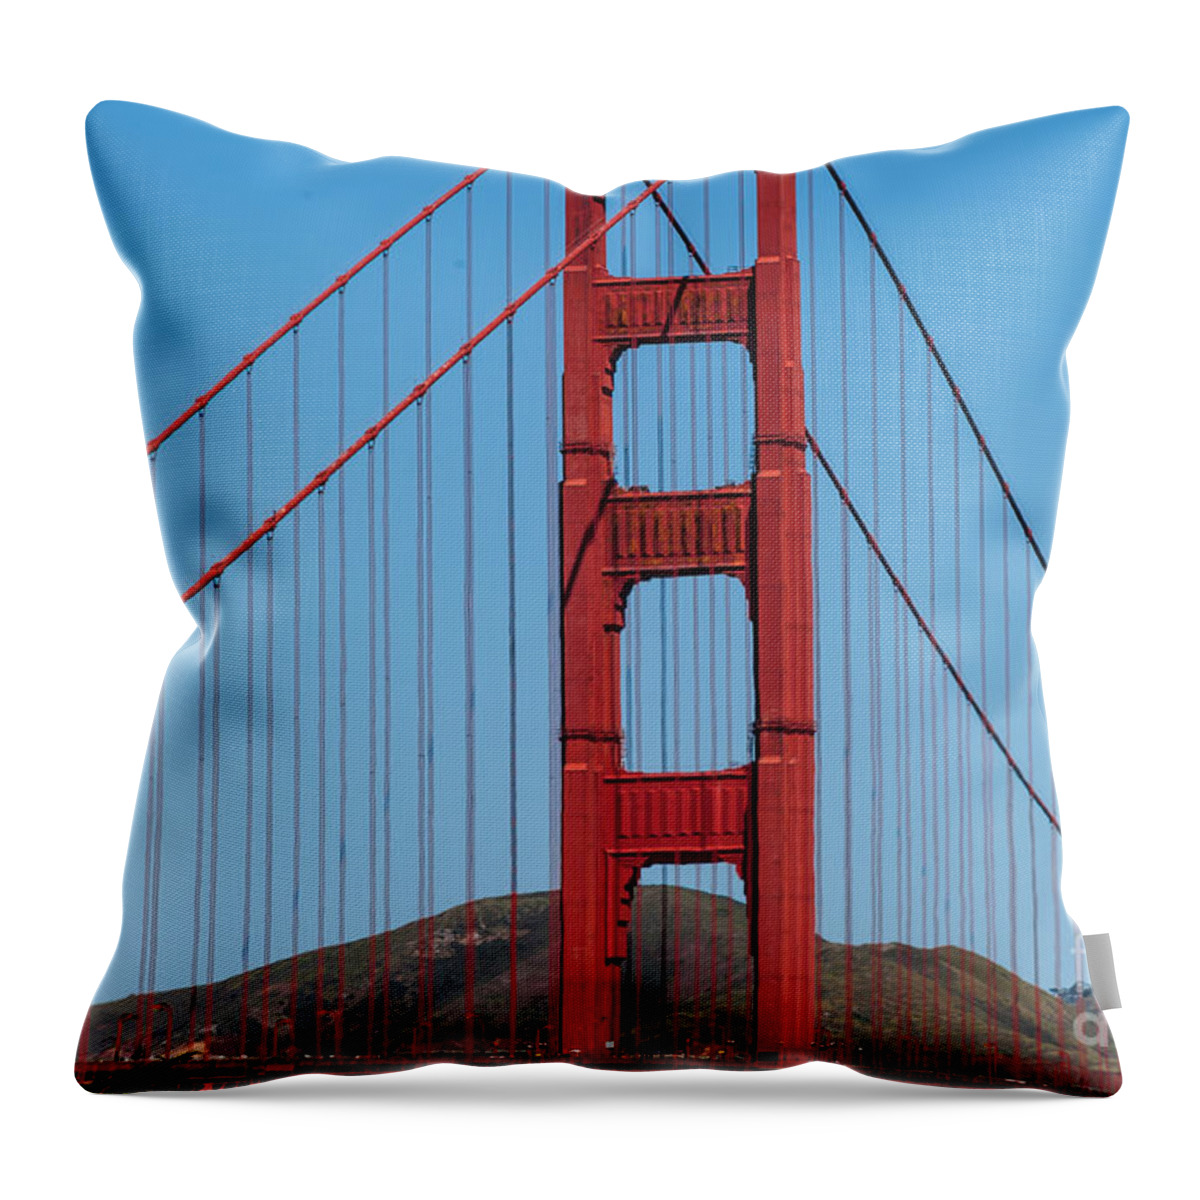  San-fransisco Bay Bridge Throw Pillow featuring the photograph San Fransisco bay Bridge by Charles McCleanon